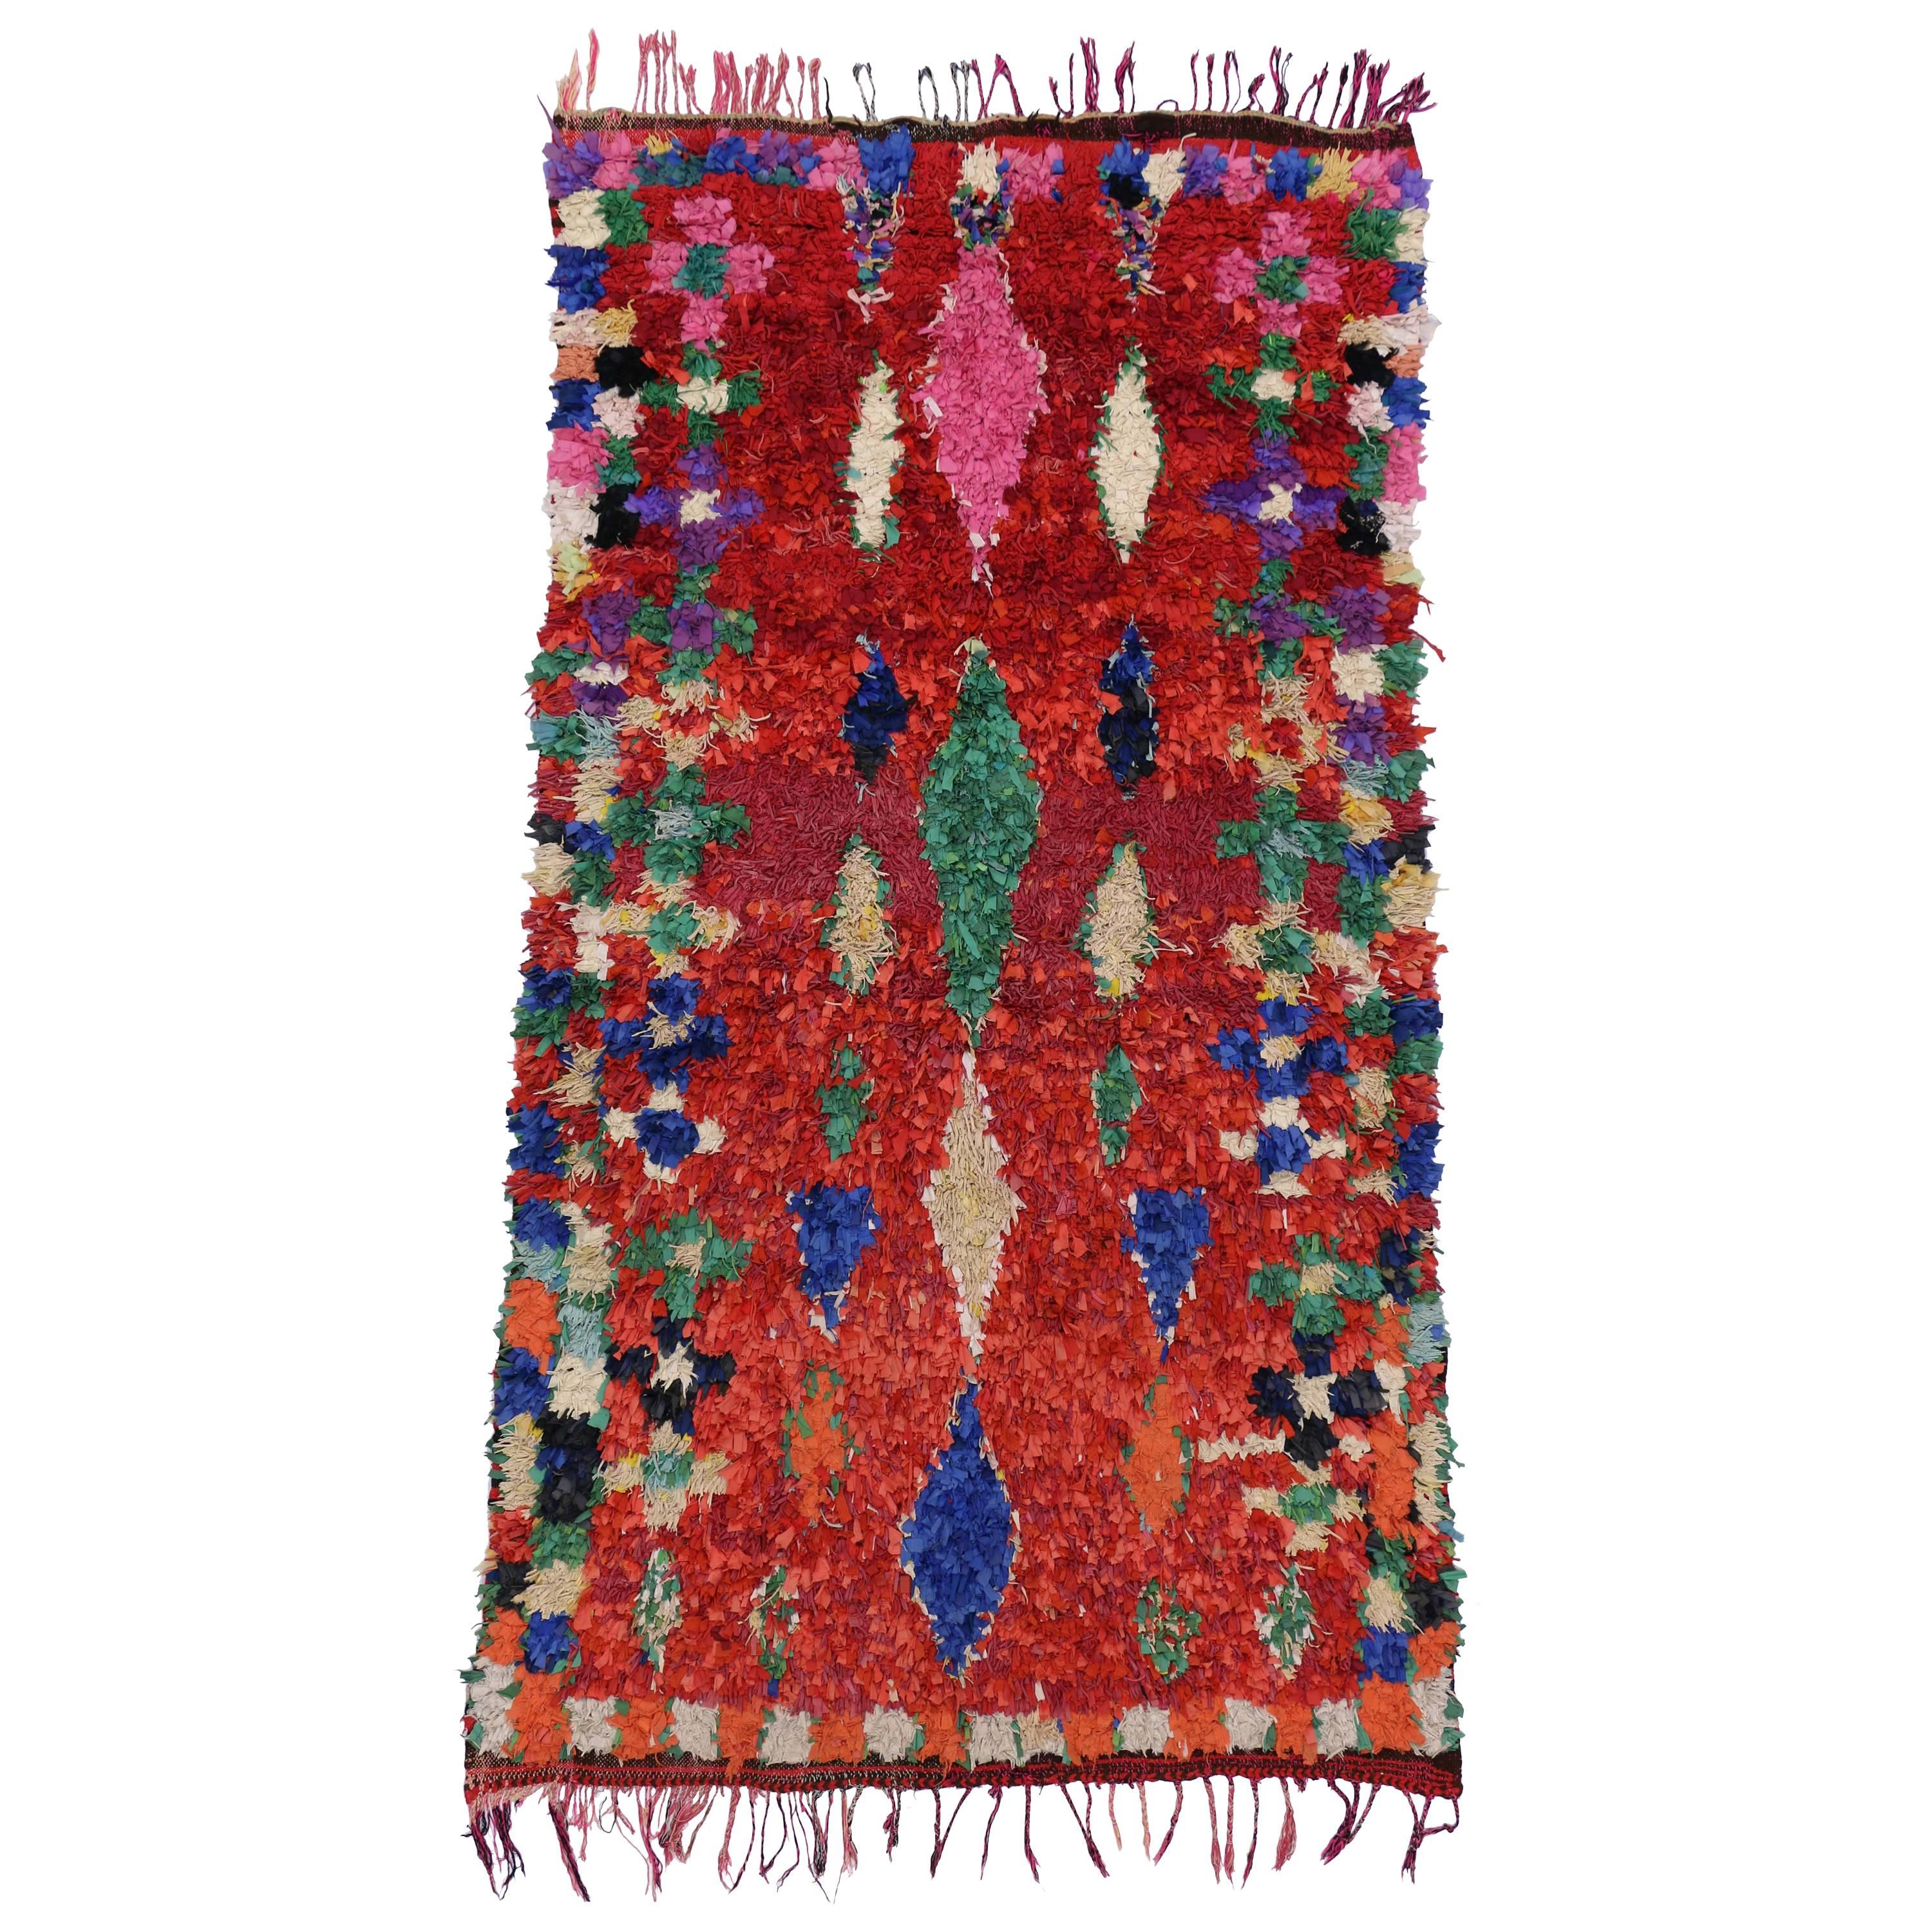 Vintage Berber Moroccan Boucherouite Rug, Colorful Moroccan Shag Area Rug